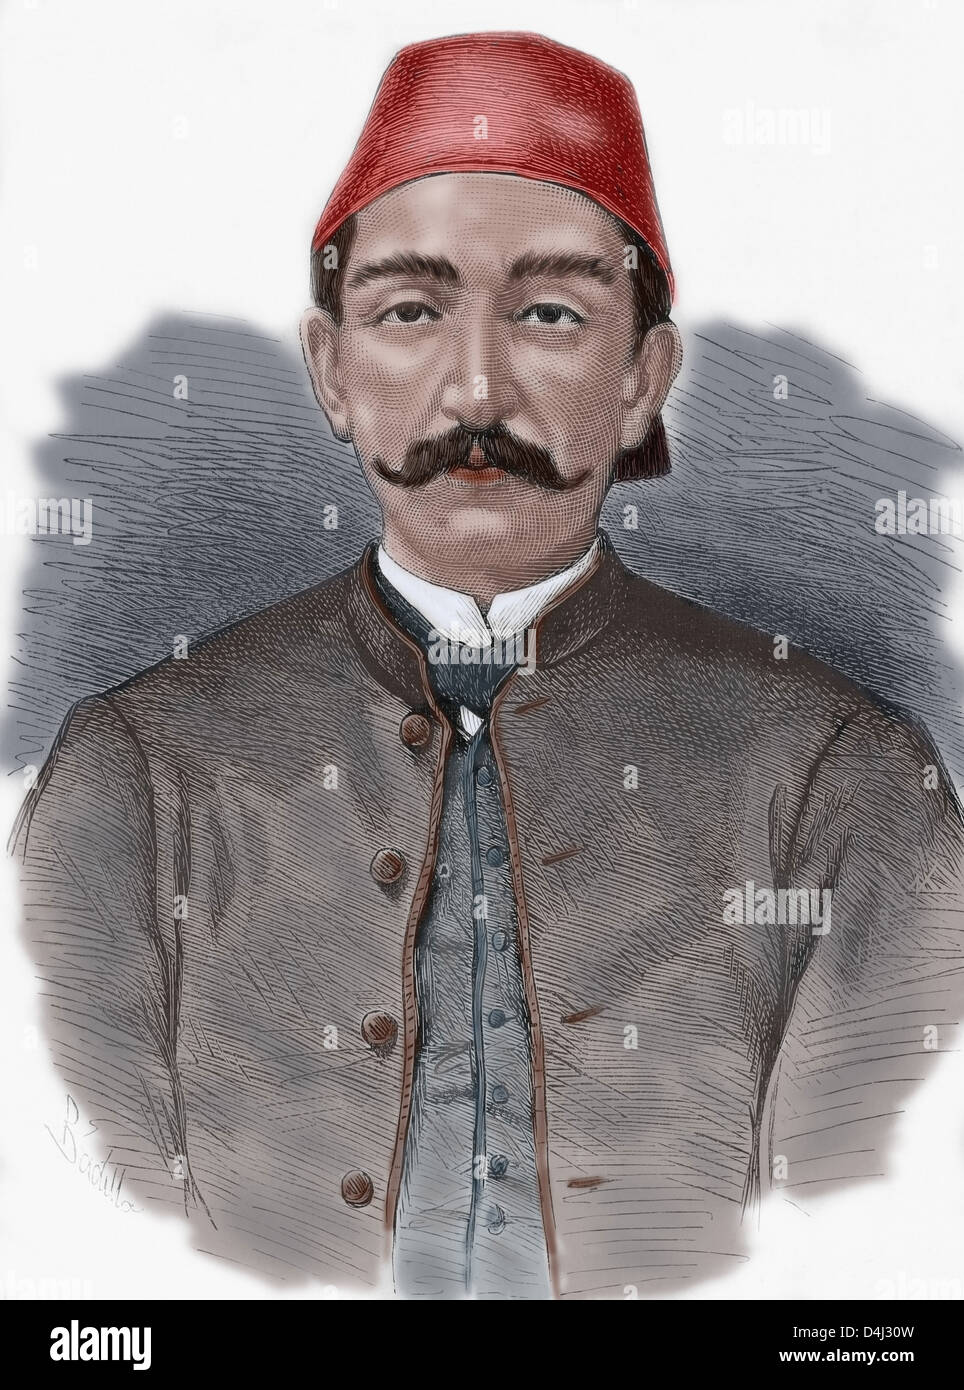 Abdul Hamid II (1842-1918). Xxxiv sultano dell'Impero Ottomano. Incisione colorata della spagnola e illustrazione americana, 1876. Foto Stock